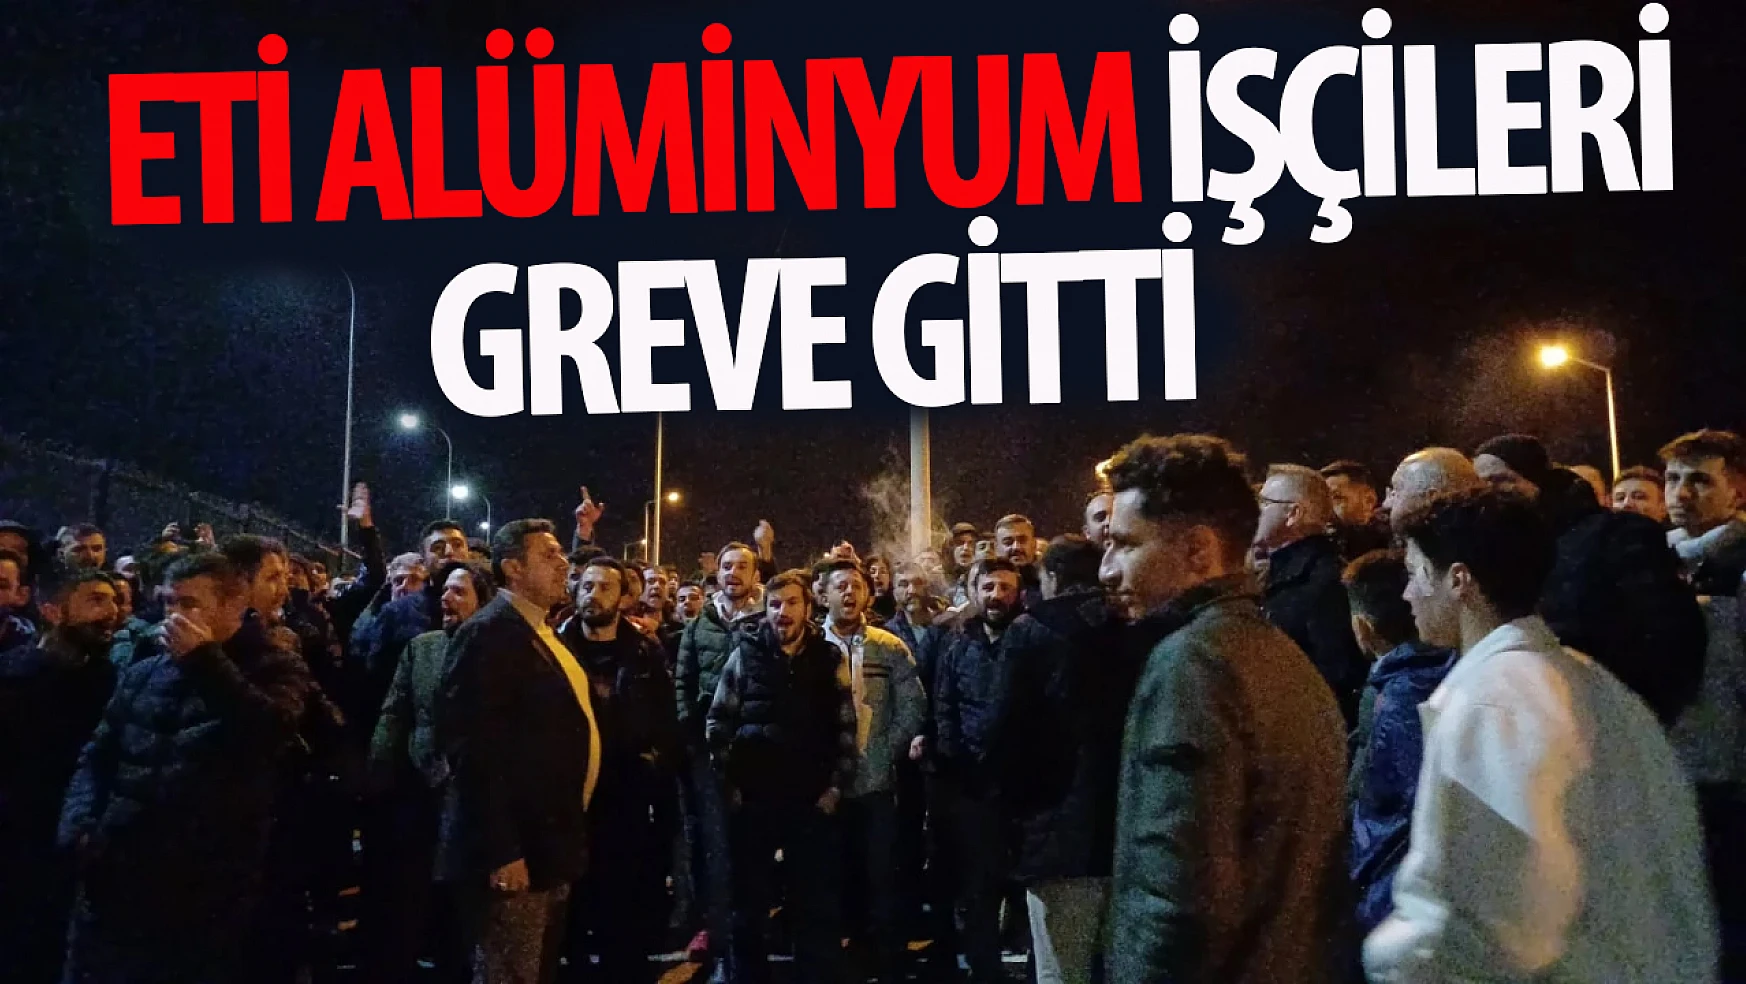 Konya'da Eti Alüminyum fabrikası işçileri greve gitti